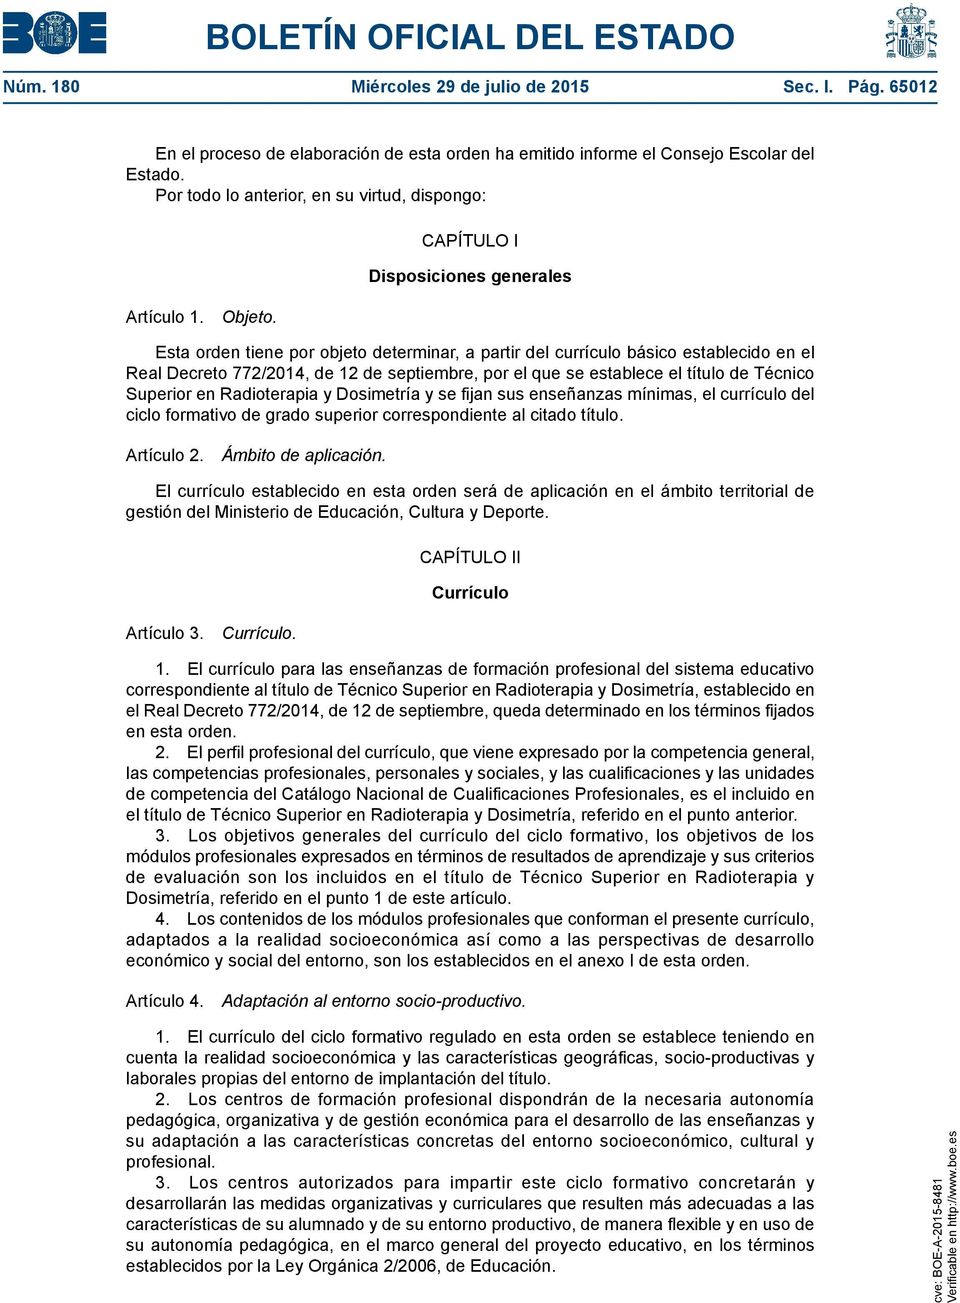 CAPÍTULO I Disposiciones generales Esta orden tiene por objeto determinar, a partir del currículo básico establecido en el Real Decreto 772/2014, de 12 de septiembre, por el que se establece el